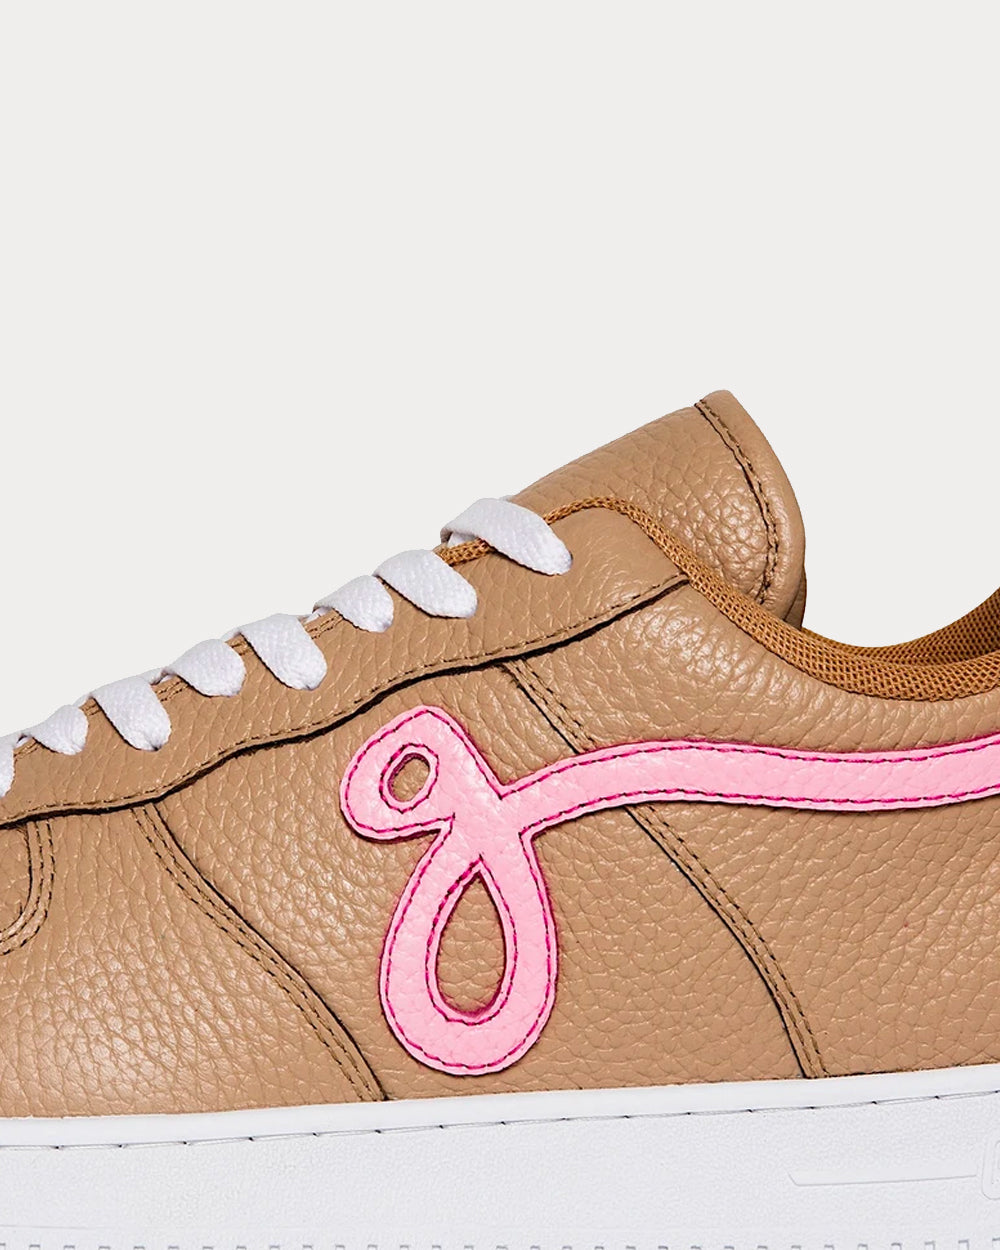 John Geiger - GF-01 'Linen' Tan / Pink Low Top Sneakers